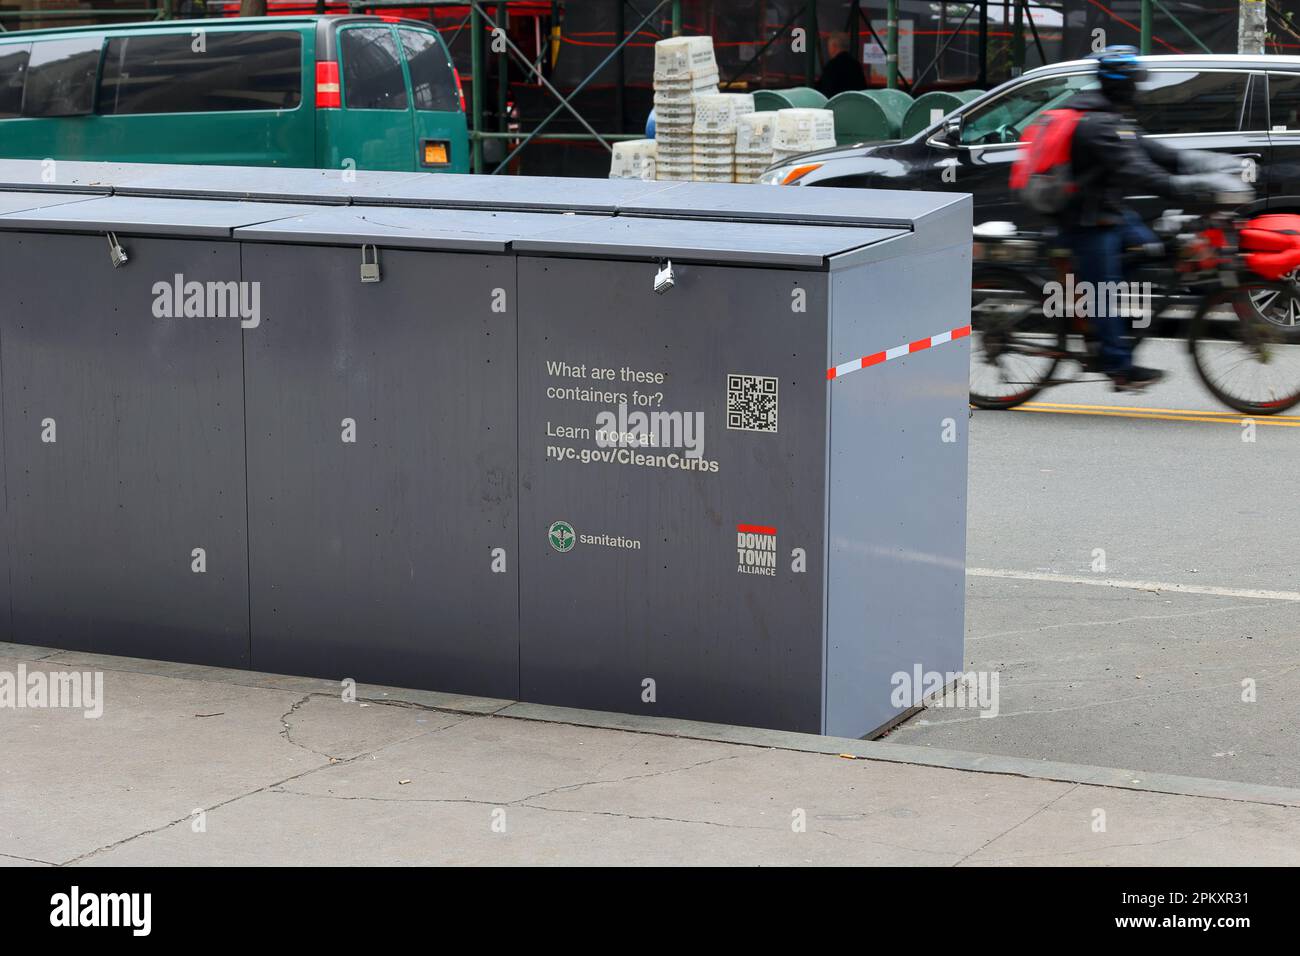 Rattensichere Behälter, die im Rahmen des New Yorker Programms „Clean Curbs“ für die vorübergehende Lagerung von Müllsäcken bis zur Müllabfuhr zugelassen sind. Stockfoto